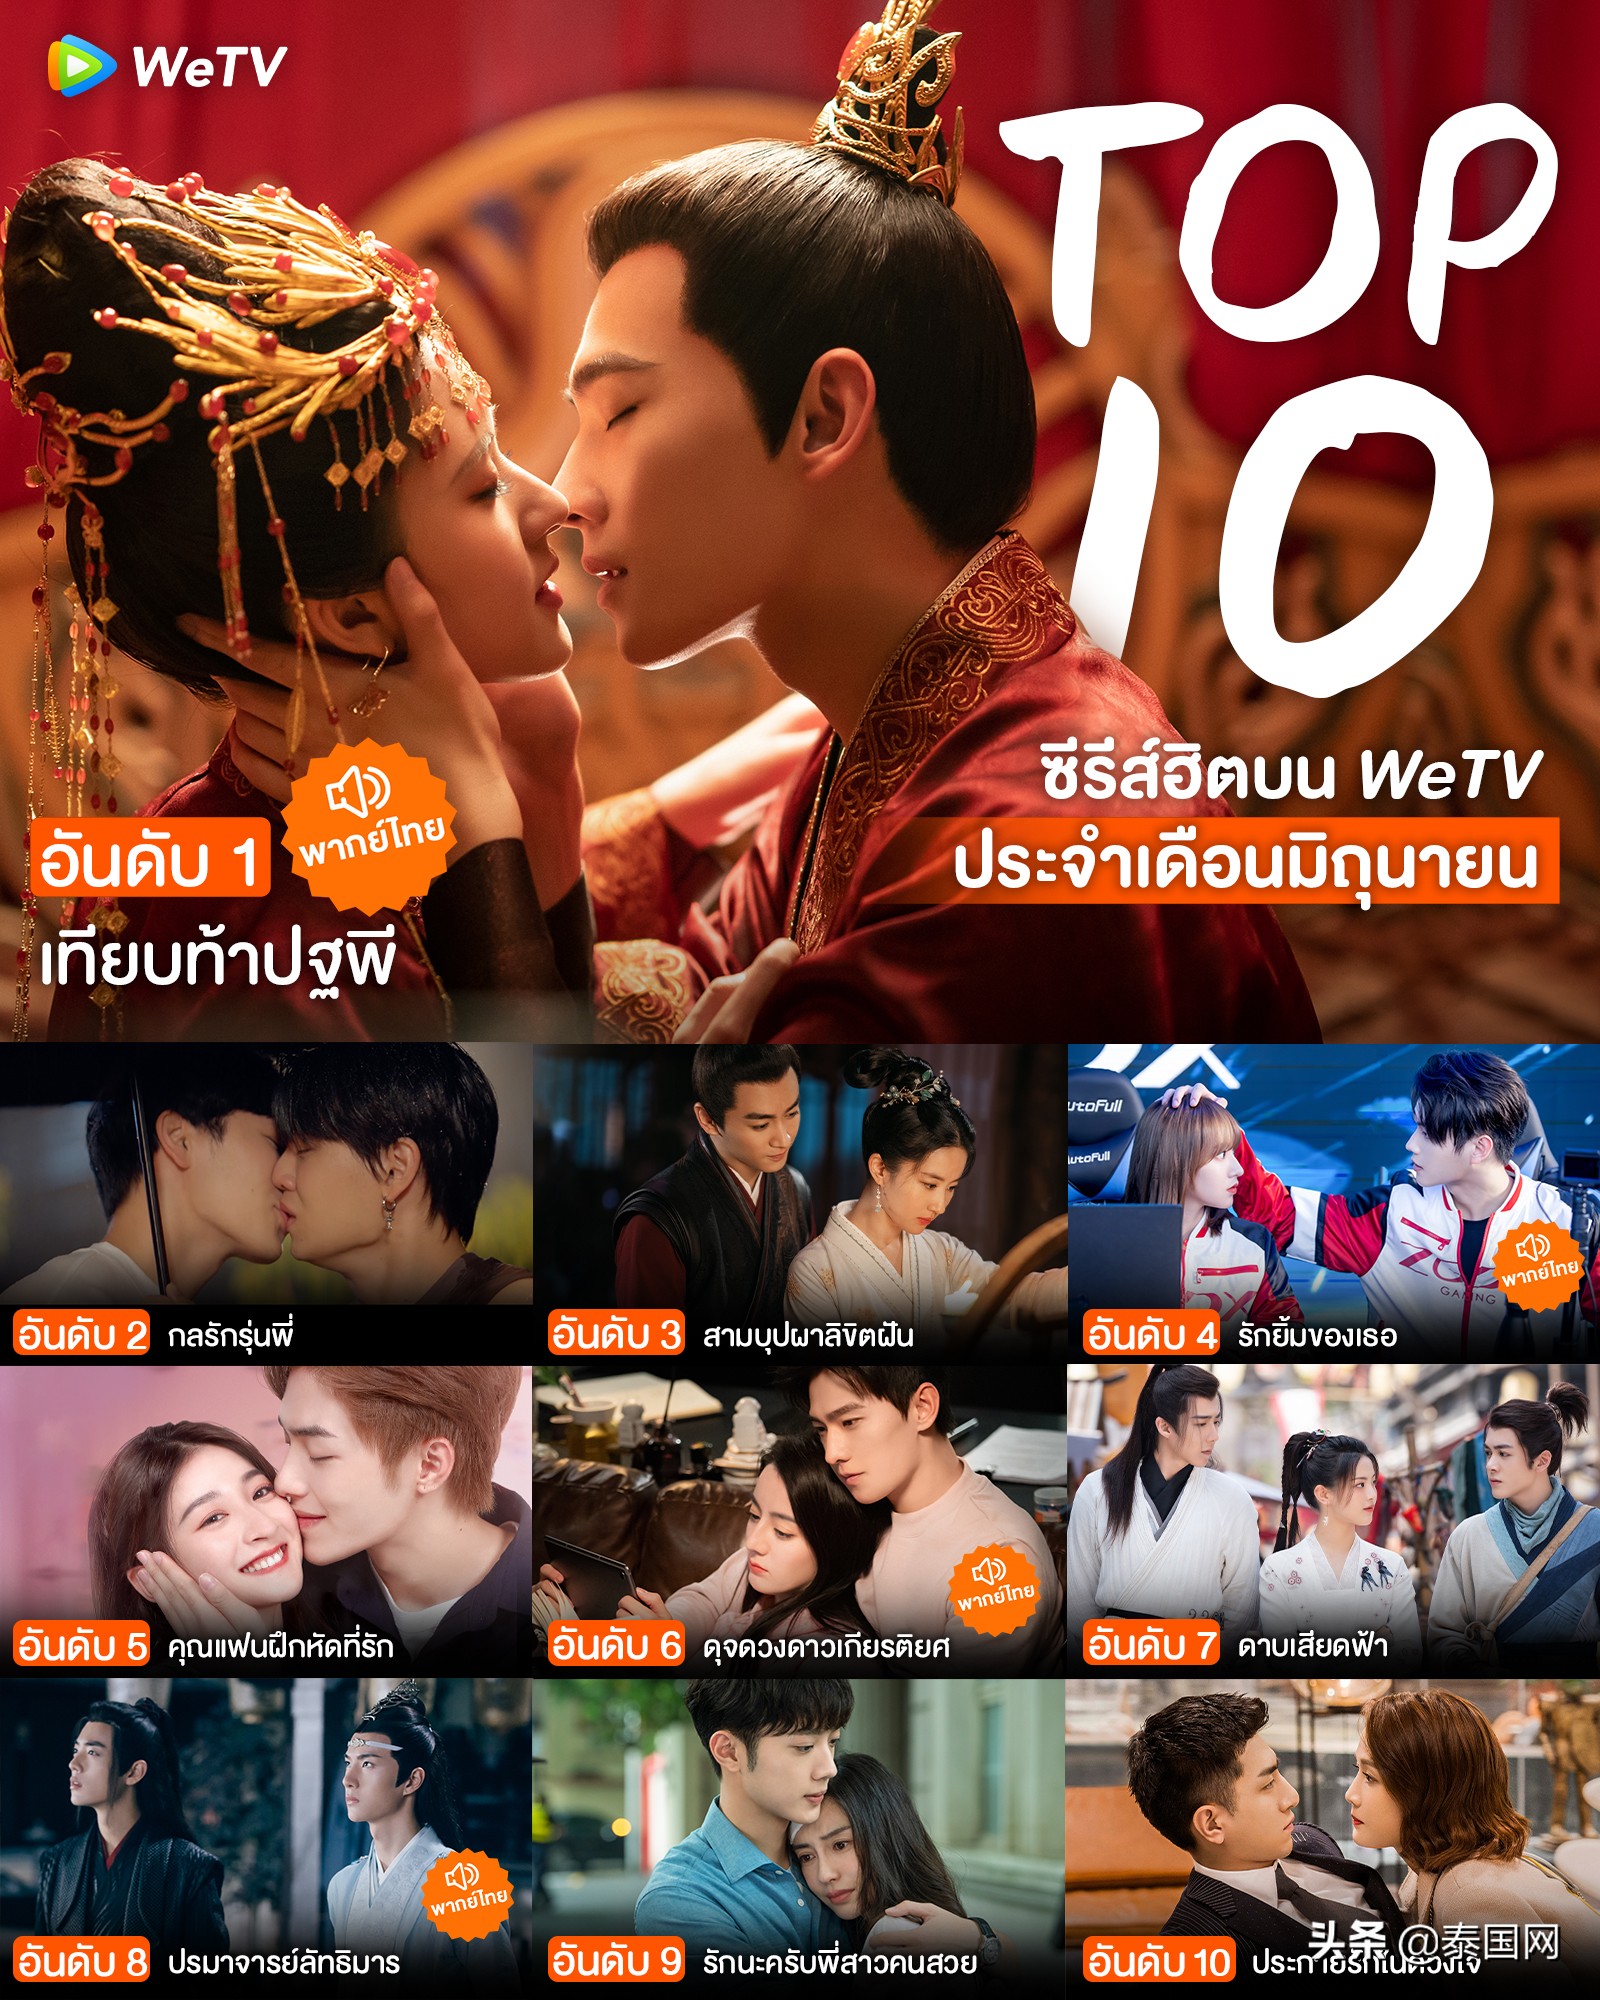 WeTV泰国6月热剧Top10排行榜